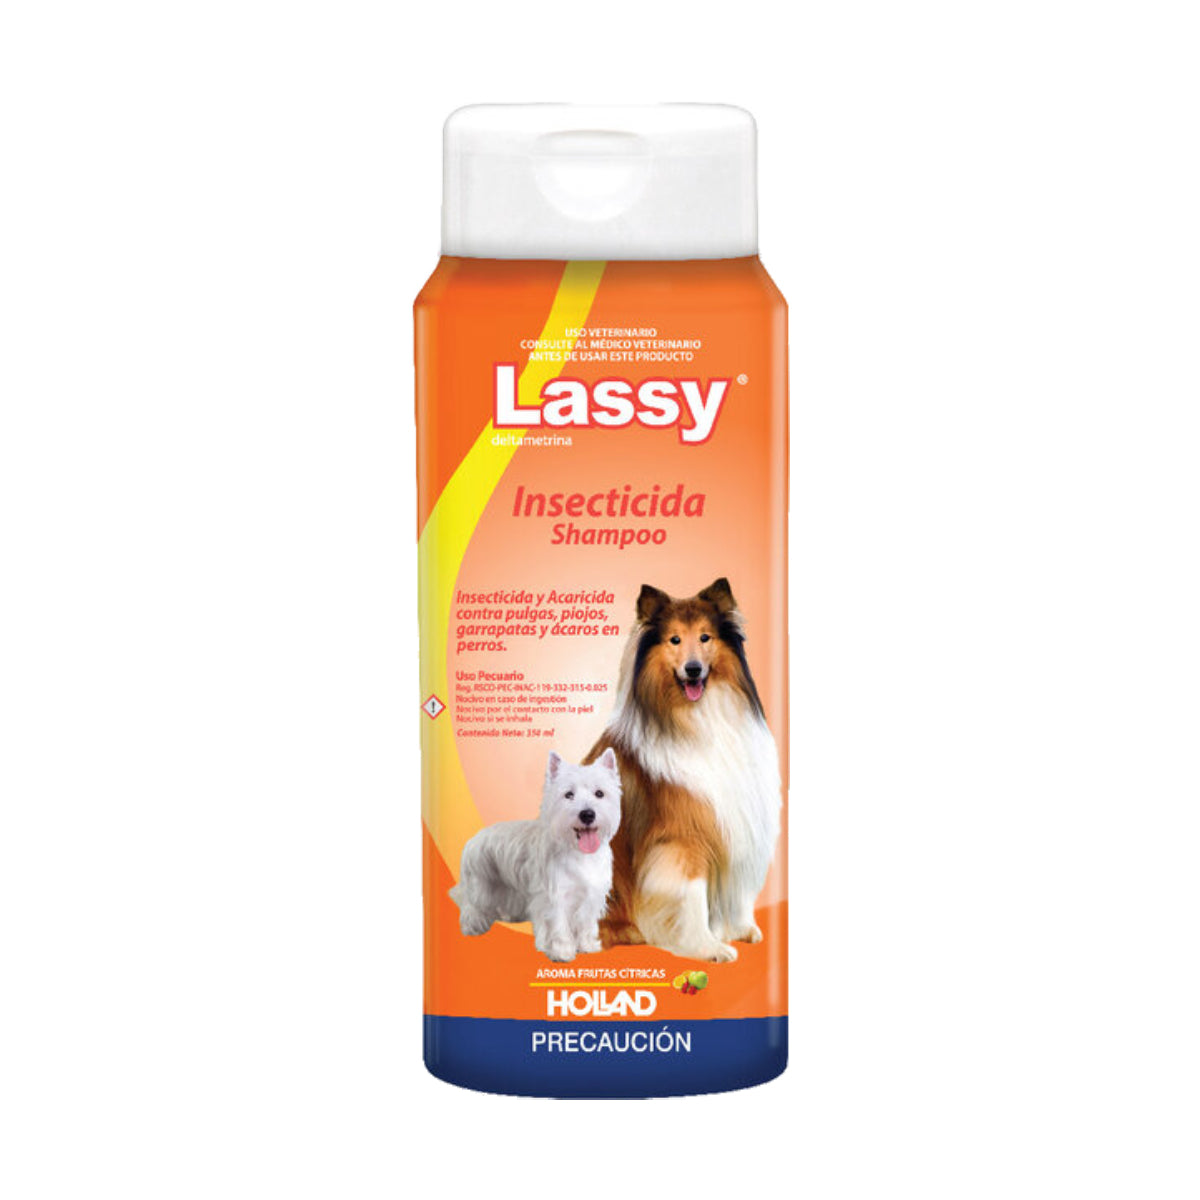 Shampoo Insecticida Lassy Holland 350 ml